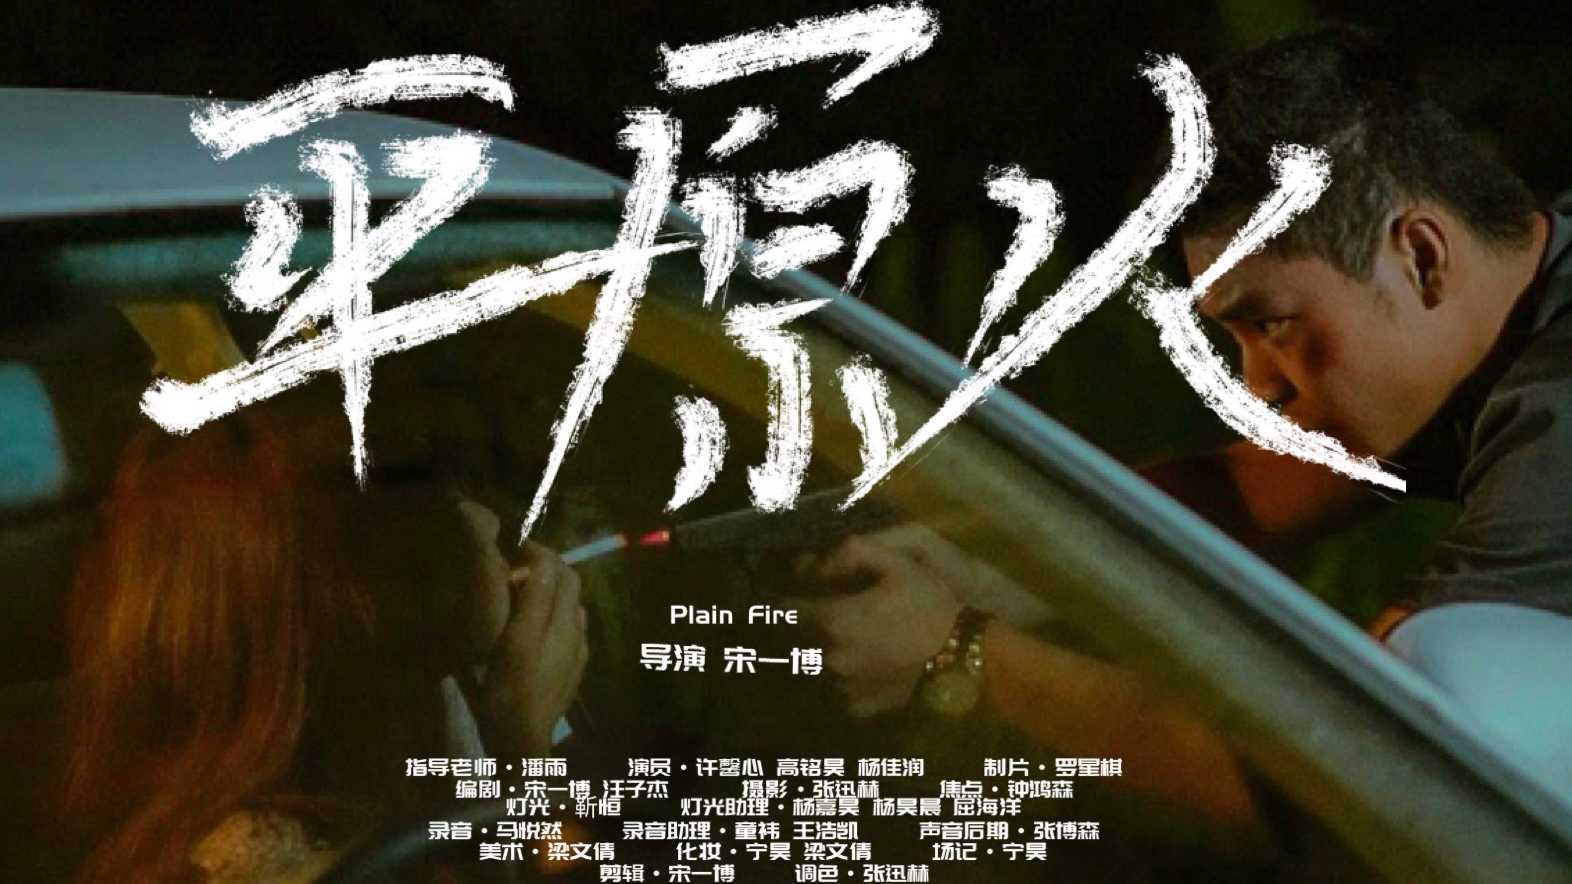 「北京电影学院」导演系 大一学生短片《平原火》